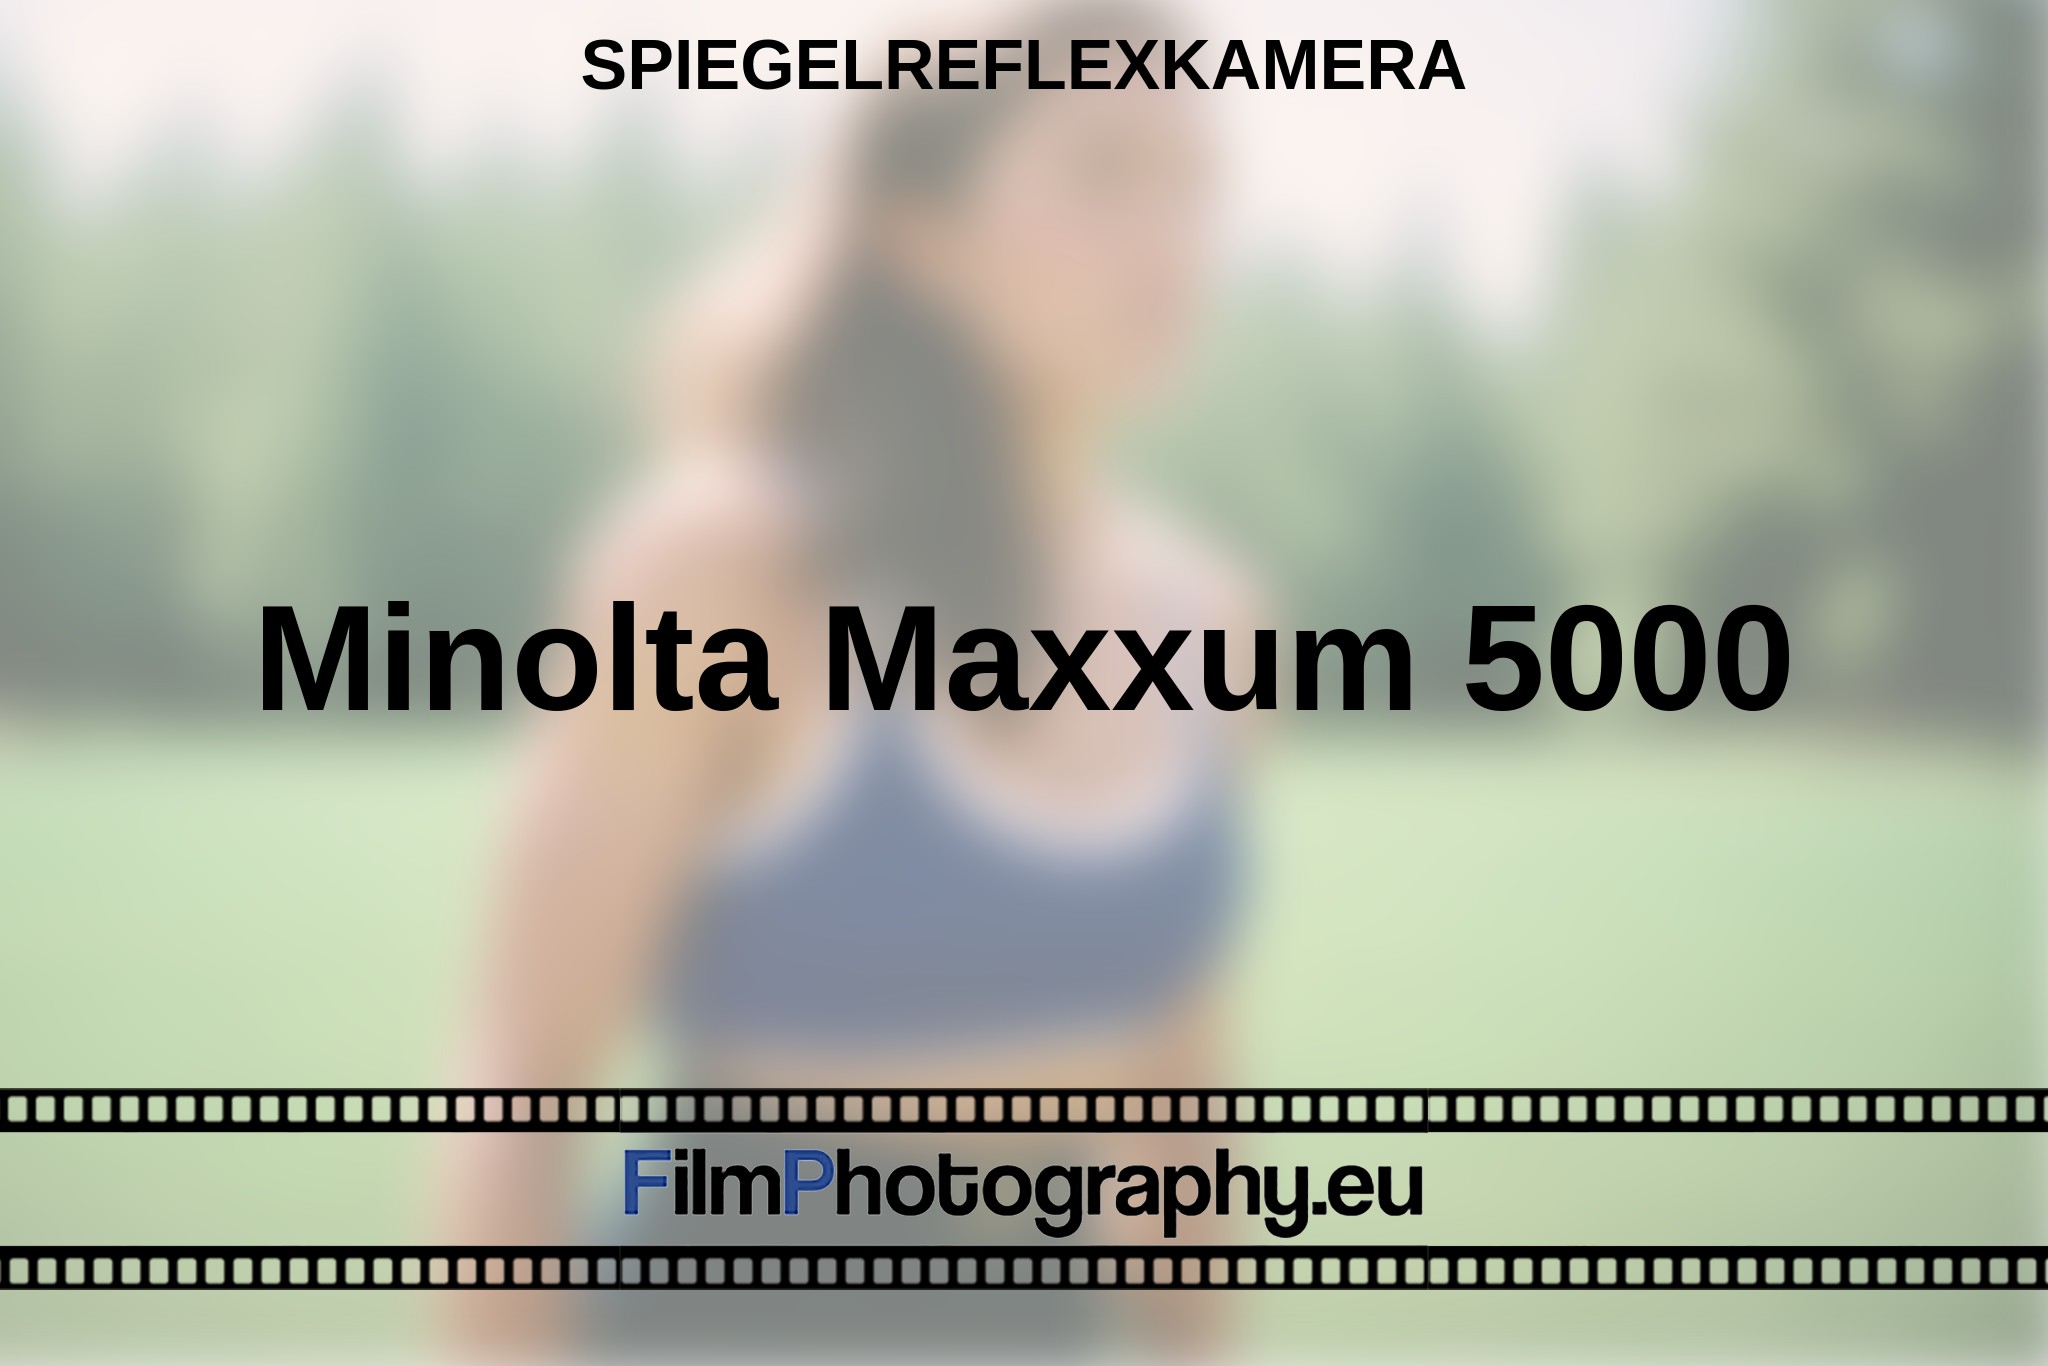 minolta-maxxum-5000-spiegelreflexkamera-bnv.jpg